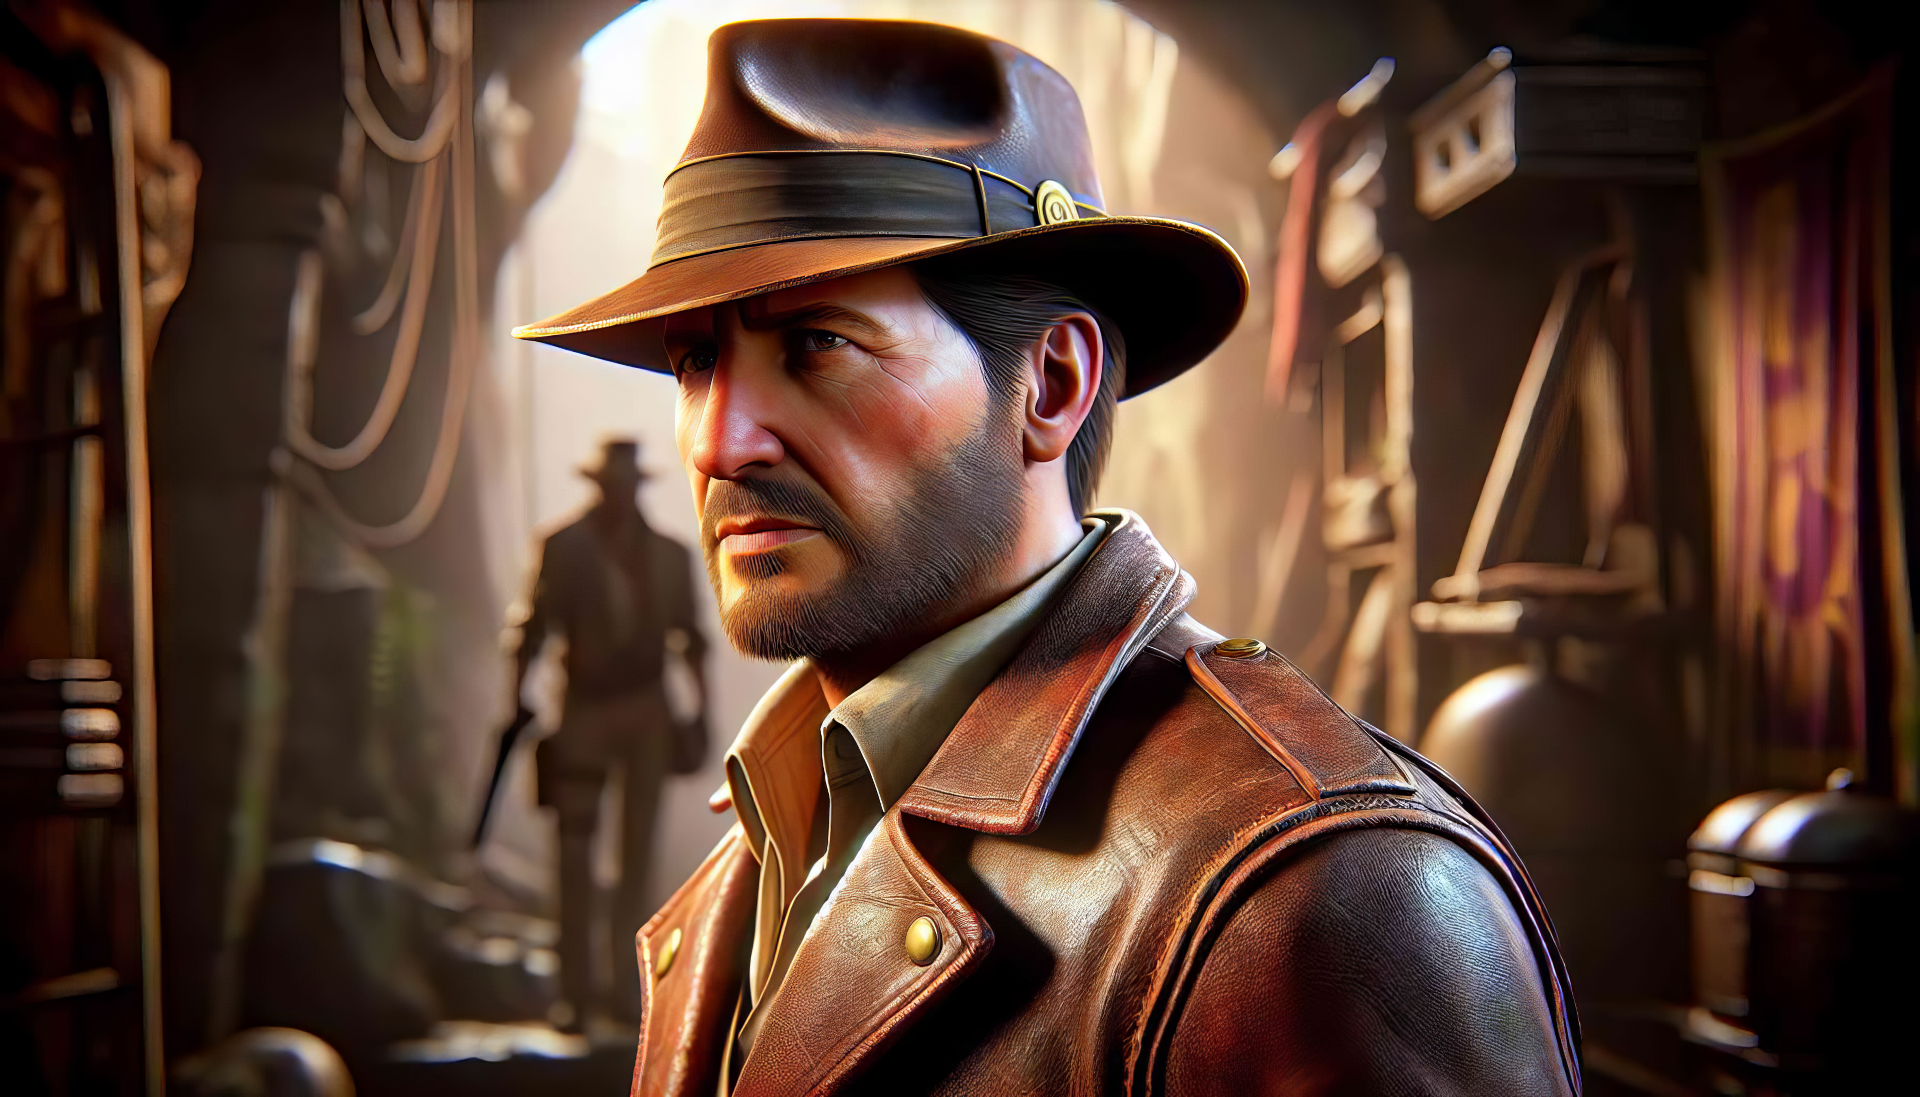 Indiana Jones und der Große Kreis könnte auch für PlayStation 5 erscheinen - Gerüchte